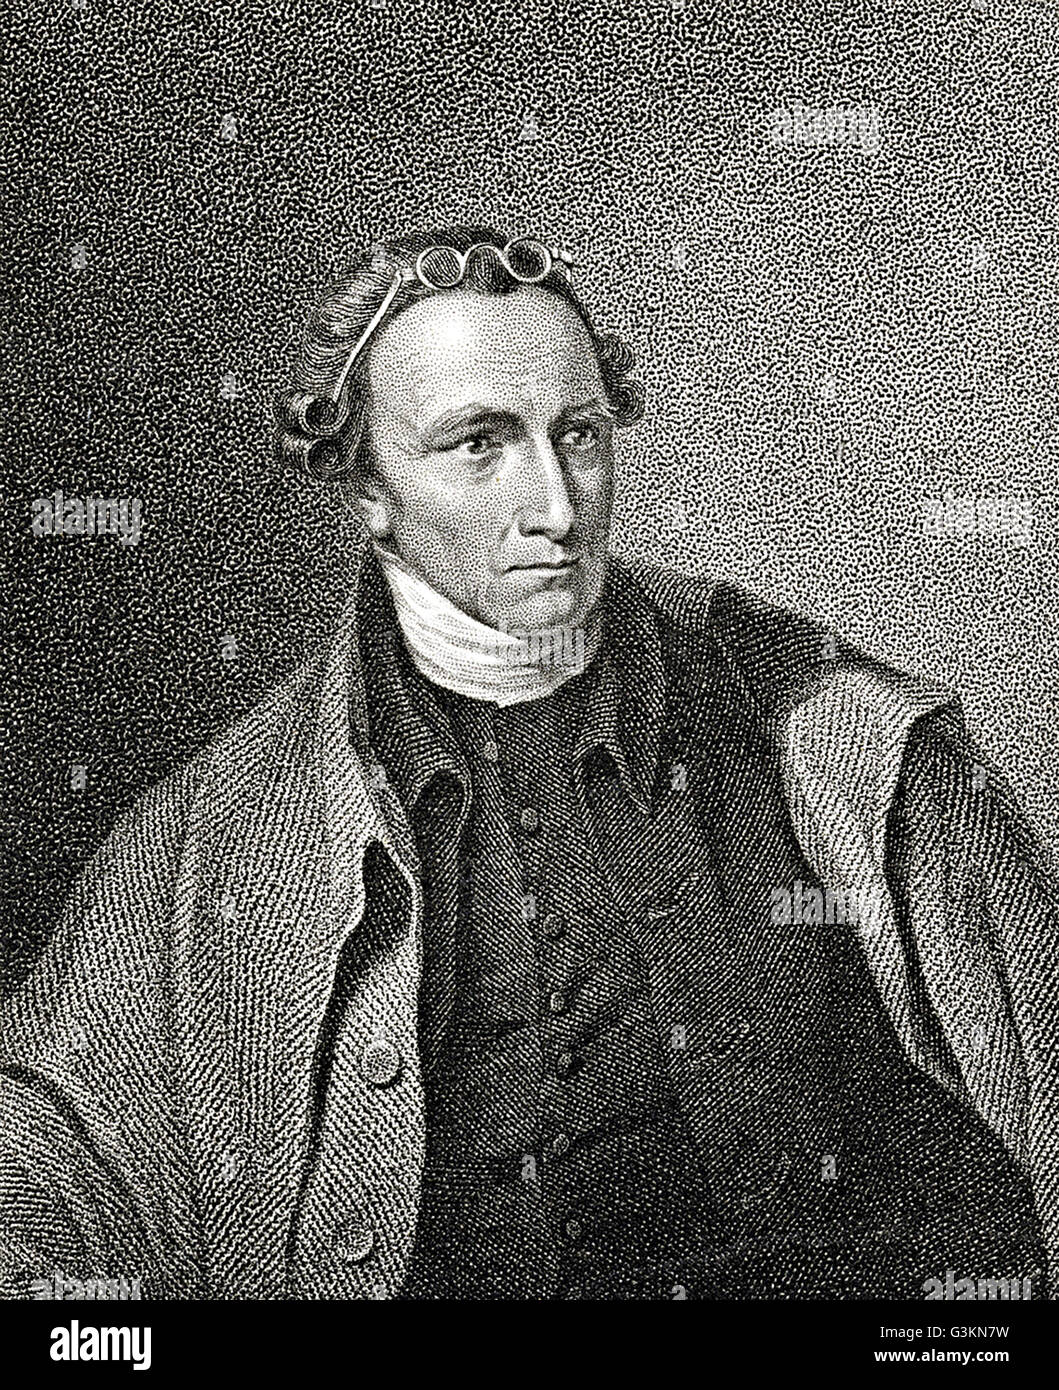 Patrick Henry, 1736 - 1799 Stock Photo